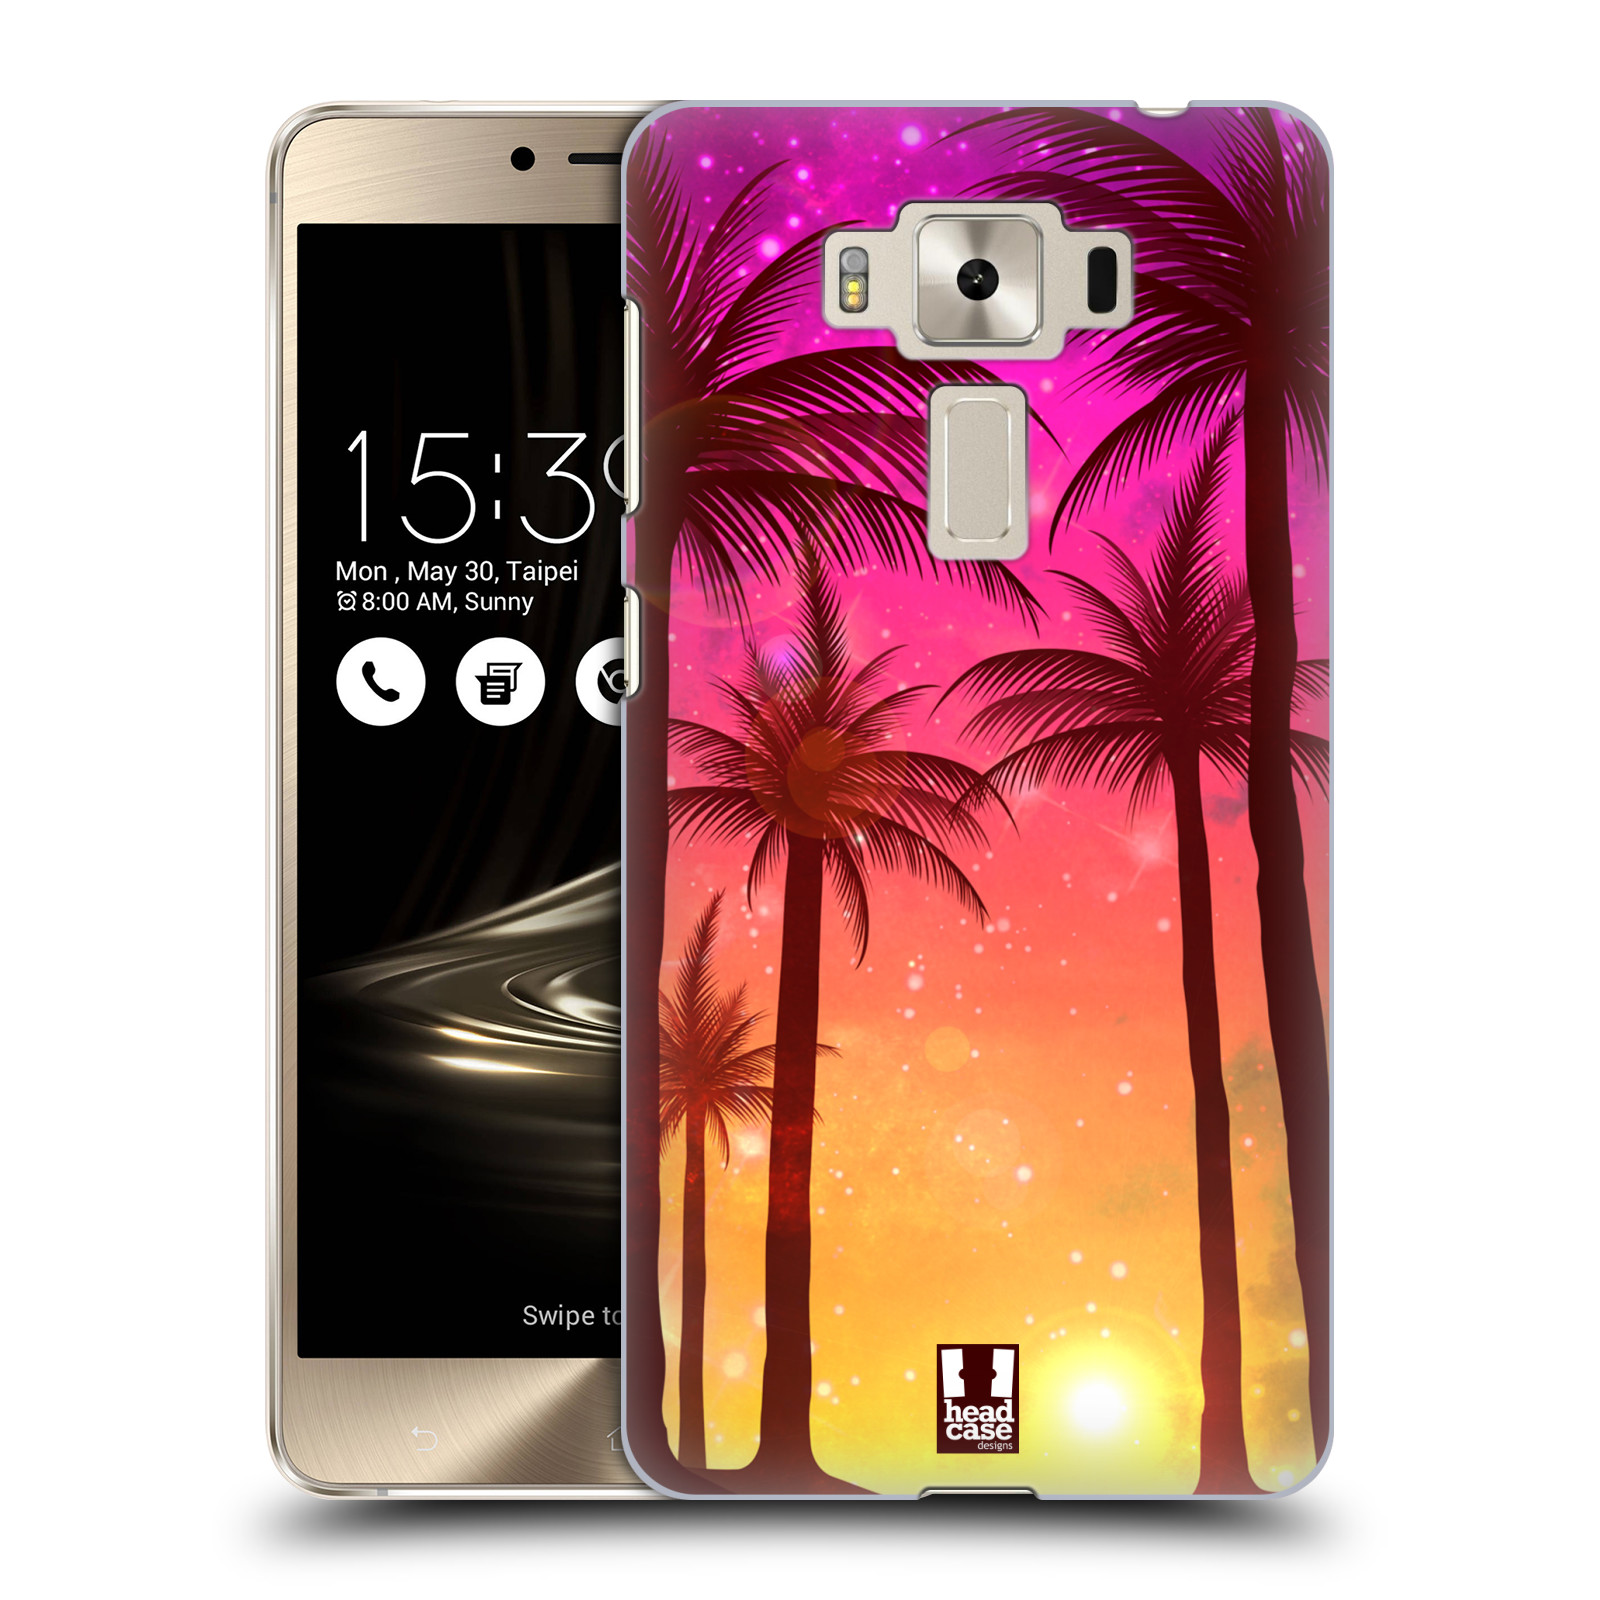 HEAD CASE plastový obal na mobil Asus Zenfone 3 DELUXE ZS550KL vzor Kreslený motiv silueta moře a palmy RŮŽOVÁ